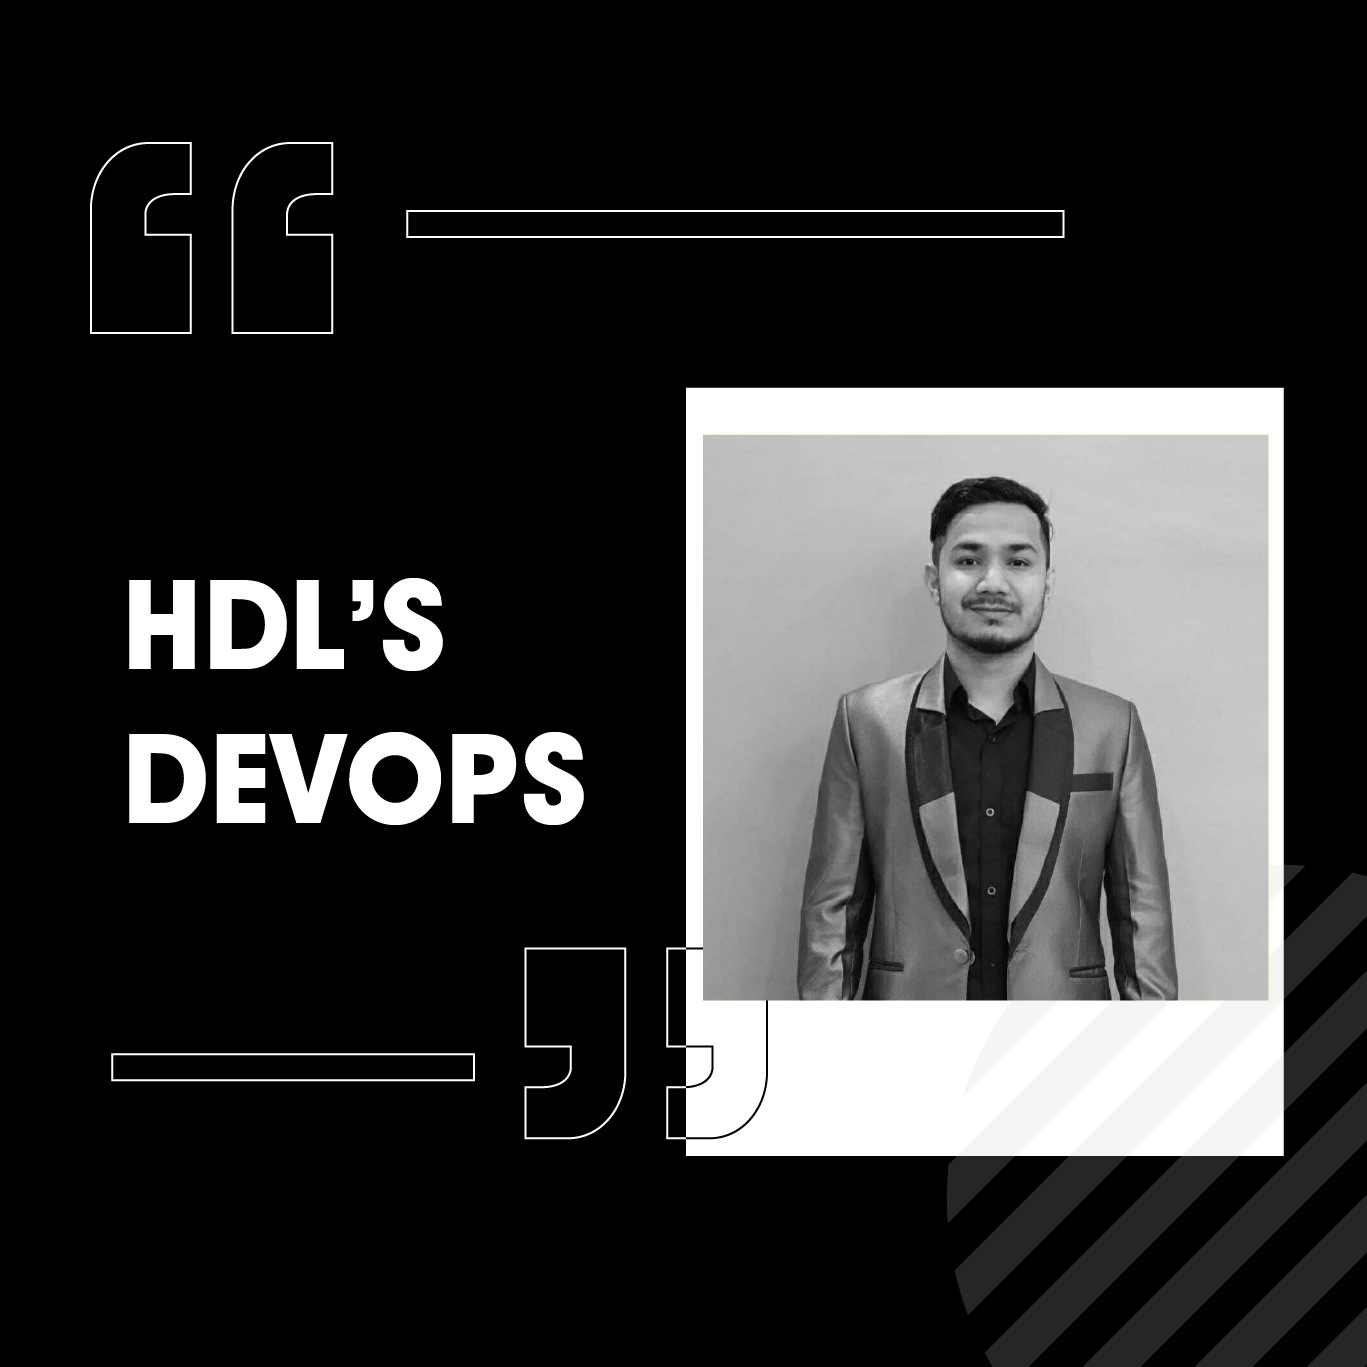 HDL’s DevOps